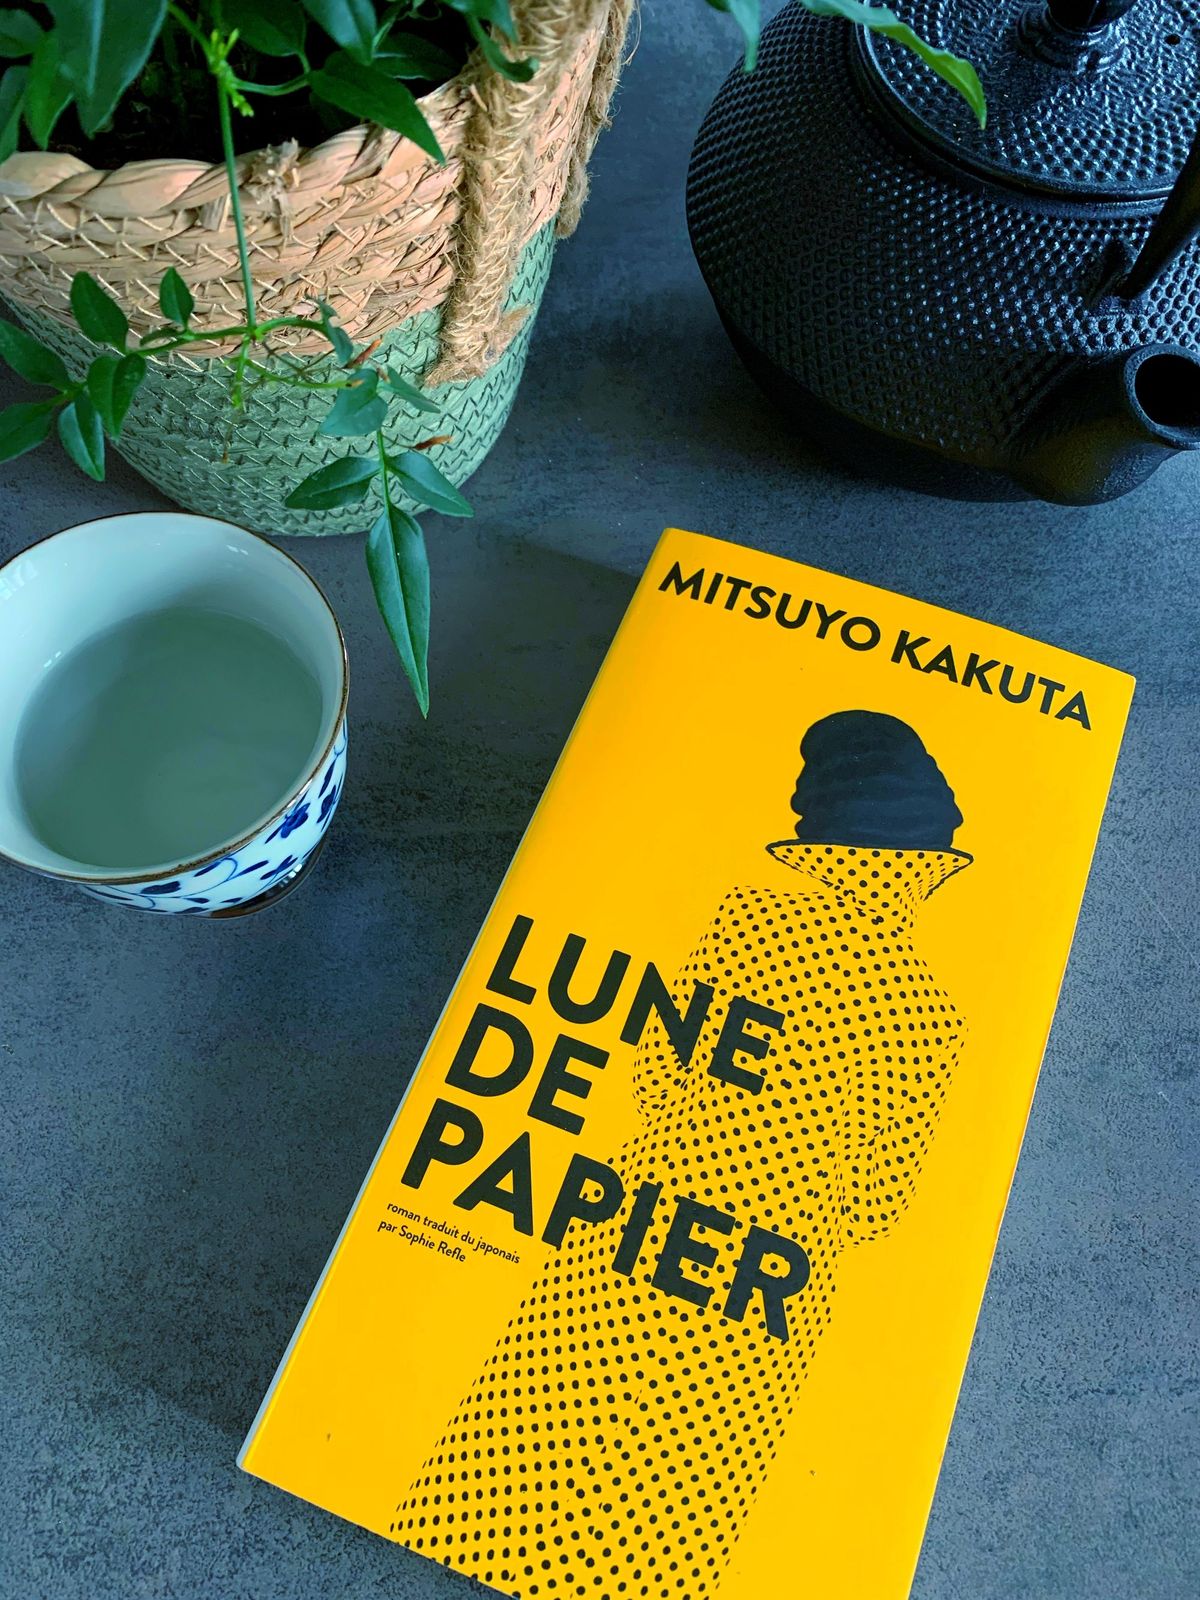 Lune de papier – Mitsuyo Kakuta (2021)